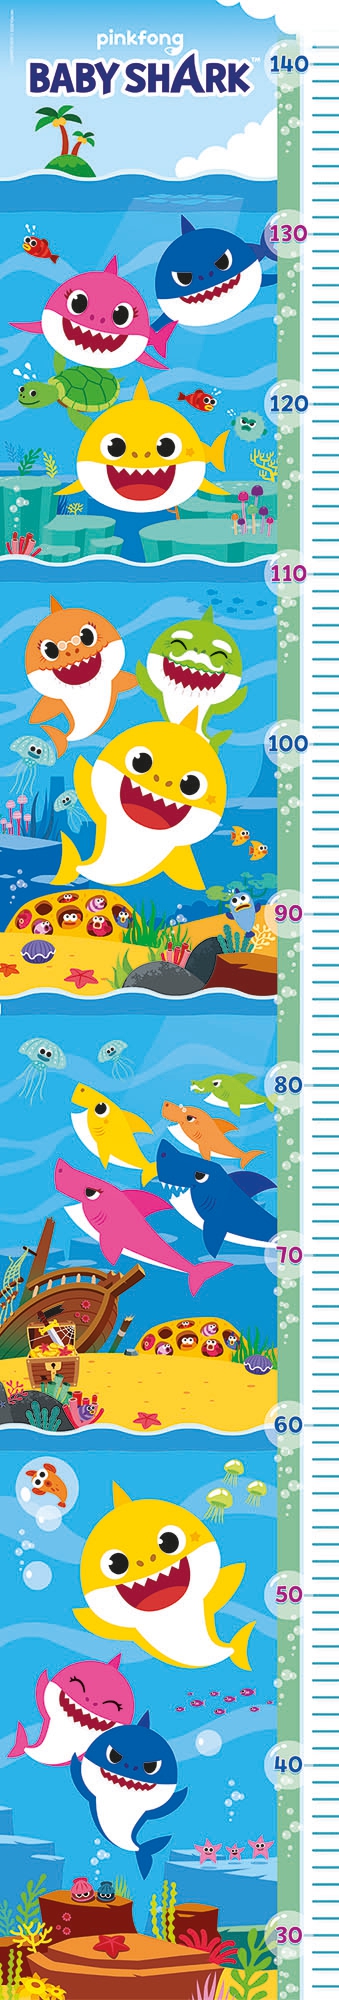 Puzzle &quot;Medidor&quot; 30 piezas -Baby Shark- Clementoni